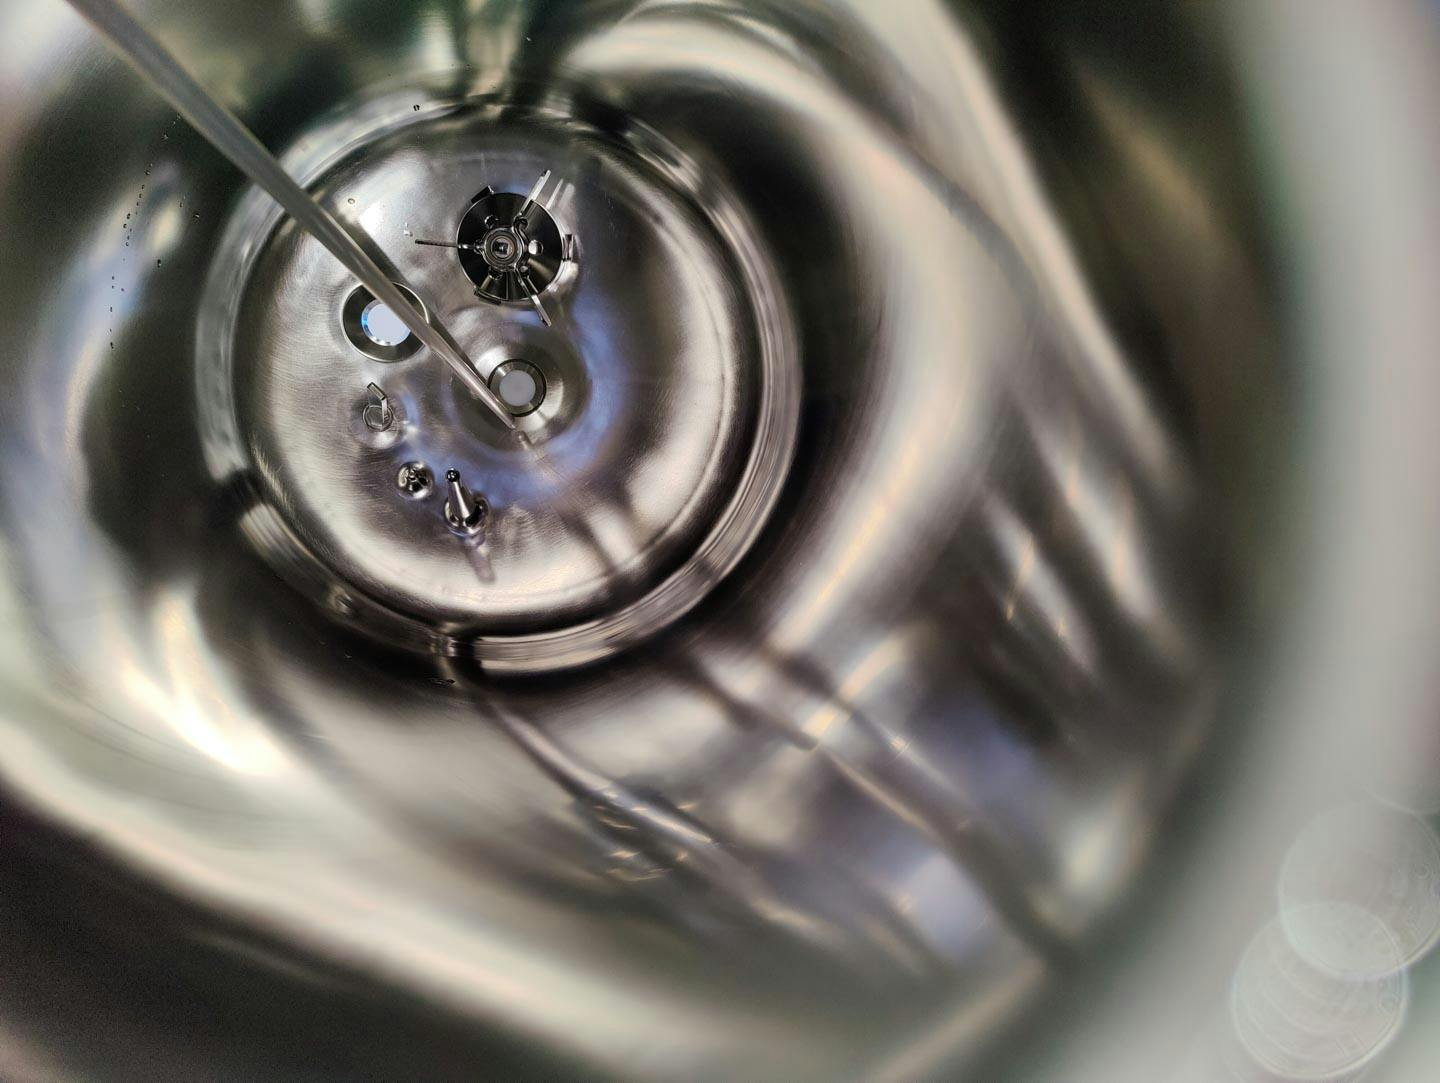 Edelstahl Maurer 167 Ltr. - Mirror-Polished Fraction Collector (Pharma Design) - Reactor de acero inoxidable - image 7